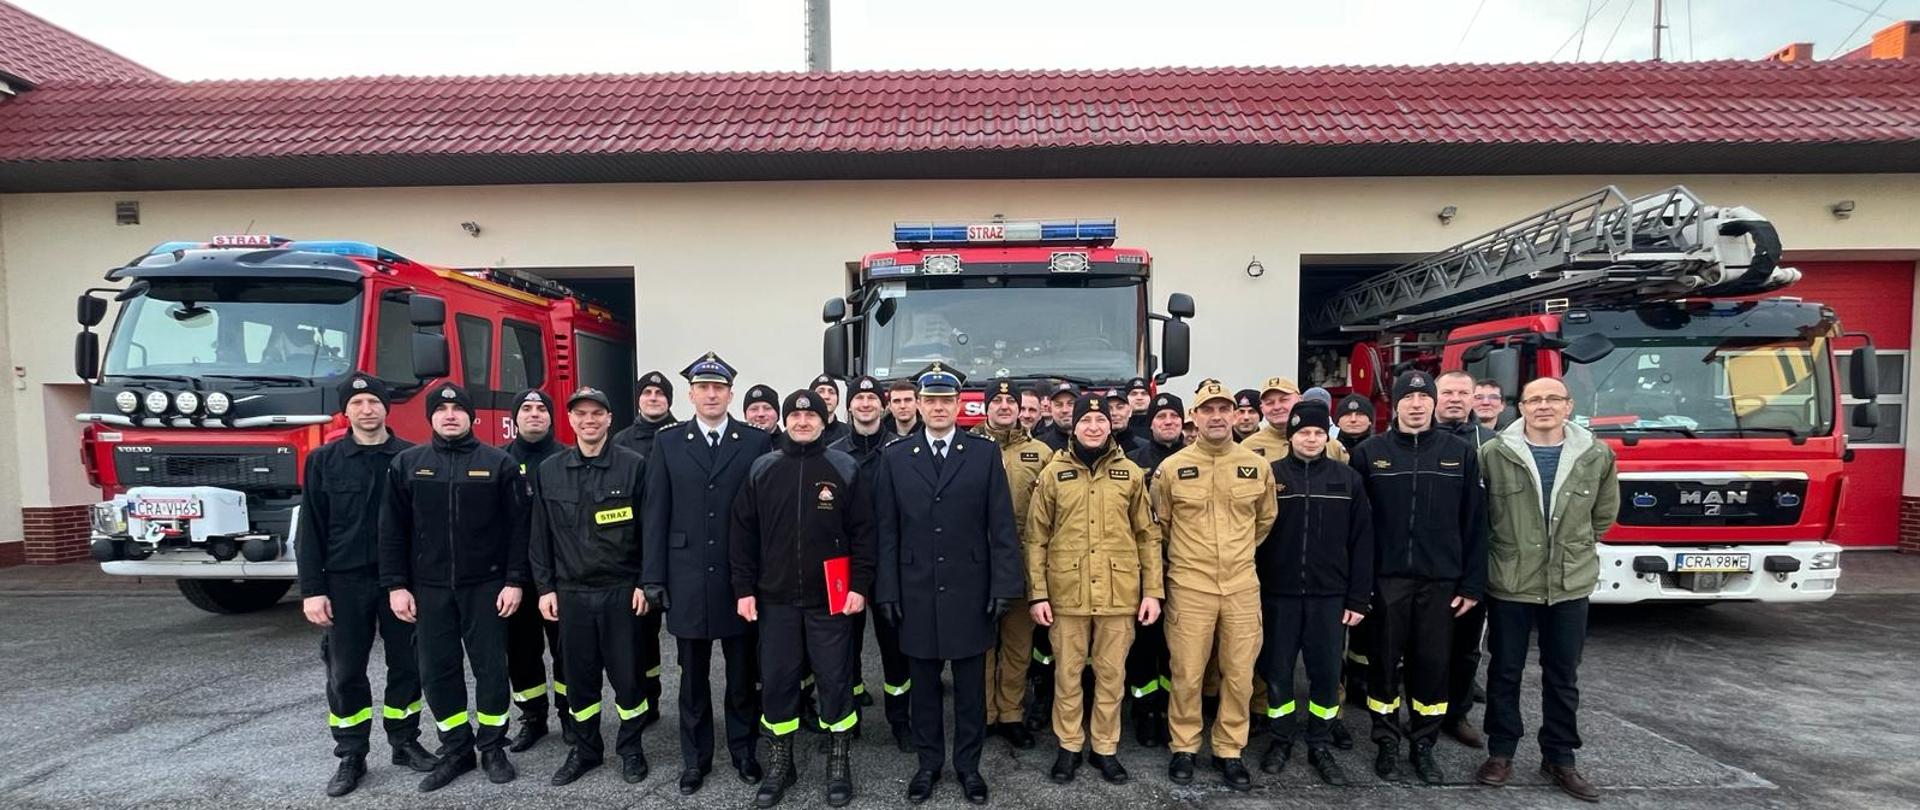 Zdjęcie przedstawia strażaków PSP podczas uroczystej zmiany służby w związku z przejściem na zaopatrzenie emerytalne Marcina. Na drugim planie pojazdy pożarnicze.